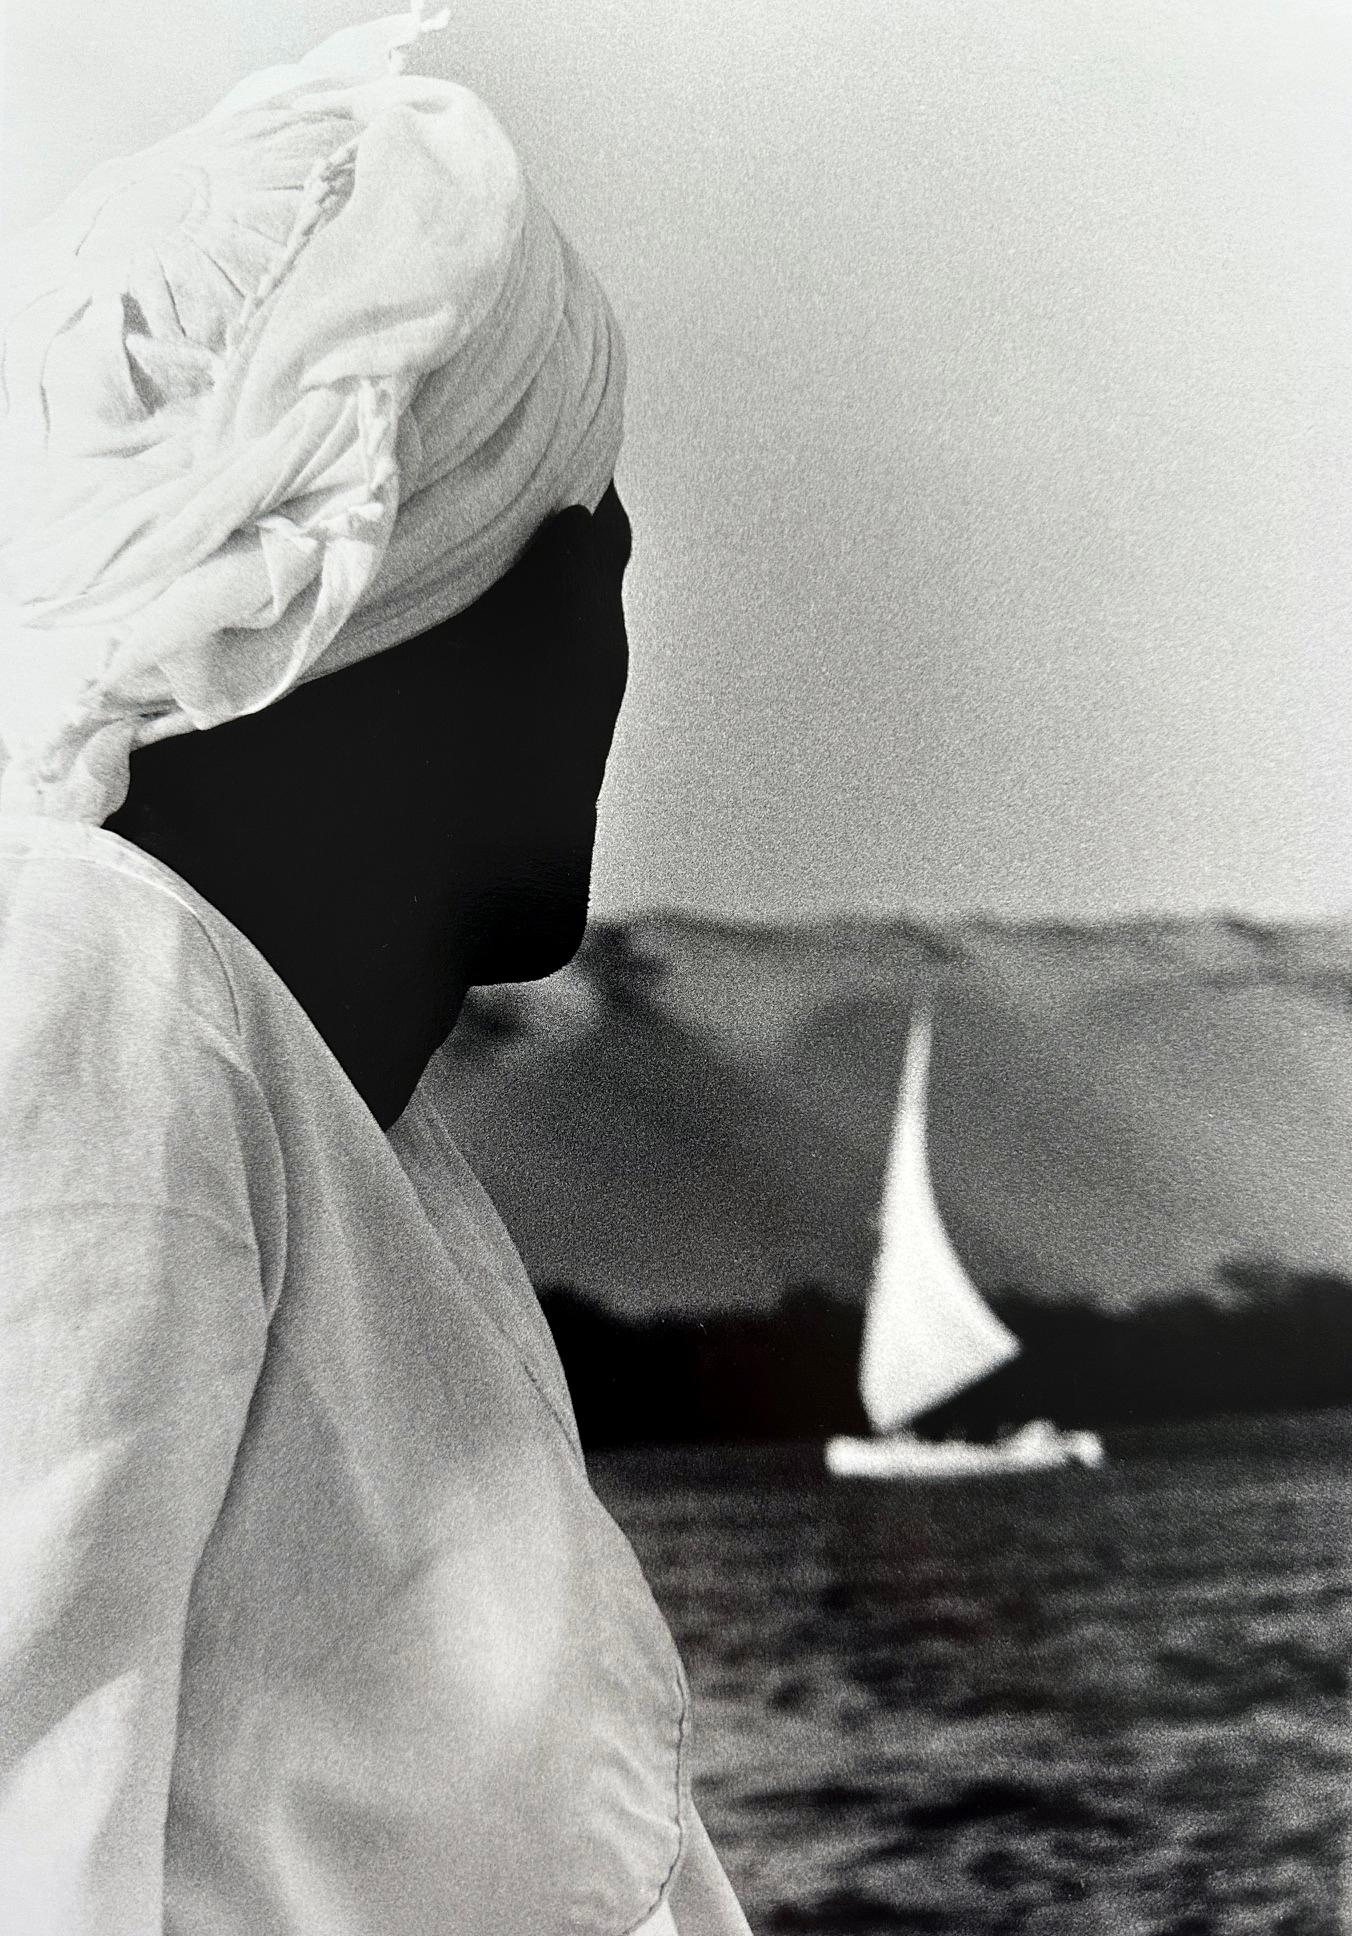 Ein Schwarz-Weiß-Gelatinesilberdruck des amerikanischen Fotografen Gibson Ralph (geboren 1939, Los Angeles, CA),
Ein ikonisches Foto aus Gibsons Serie Pharaonic Light von 1991. Titelbild des 1995 erschienenen Ausstellungsbuchs 